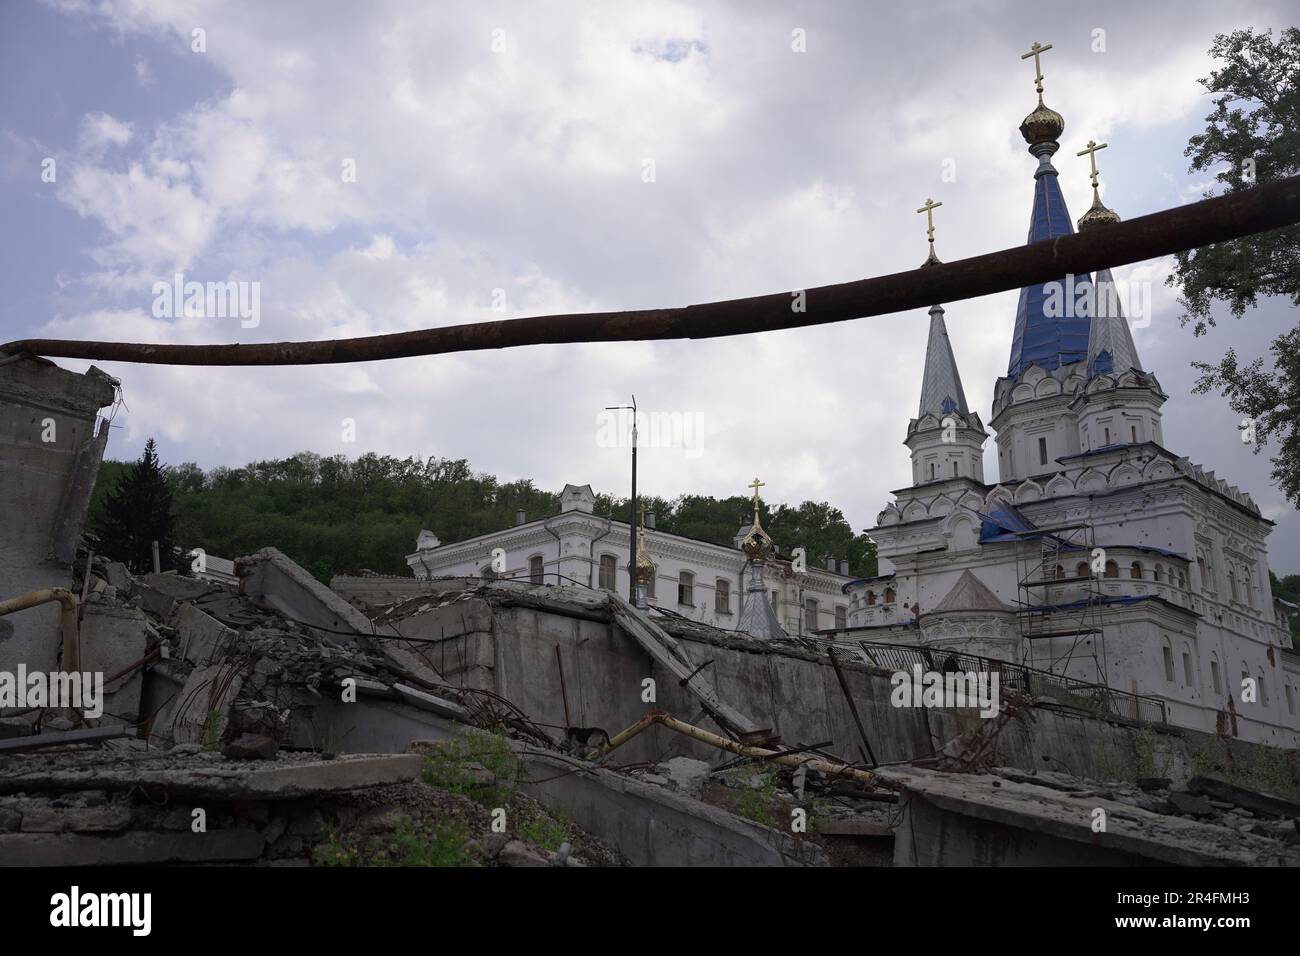 Die zerstörte Stadt Sviatohirsk in der Region UkraineÕs Donbass. Erst vor ein paar Monaten wurde es von russischen Truppen besetzt. Die UkraineÕs-Armee befreite die Stadt, aber die Narben des Krieges sind noch da. Stockfoto